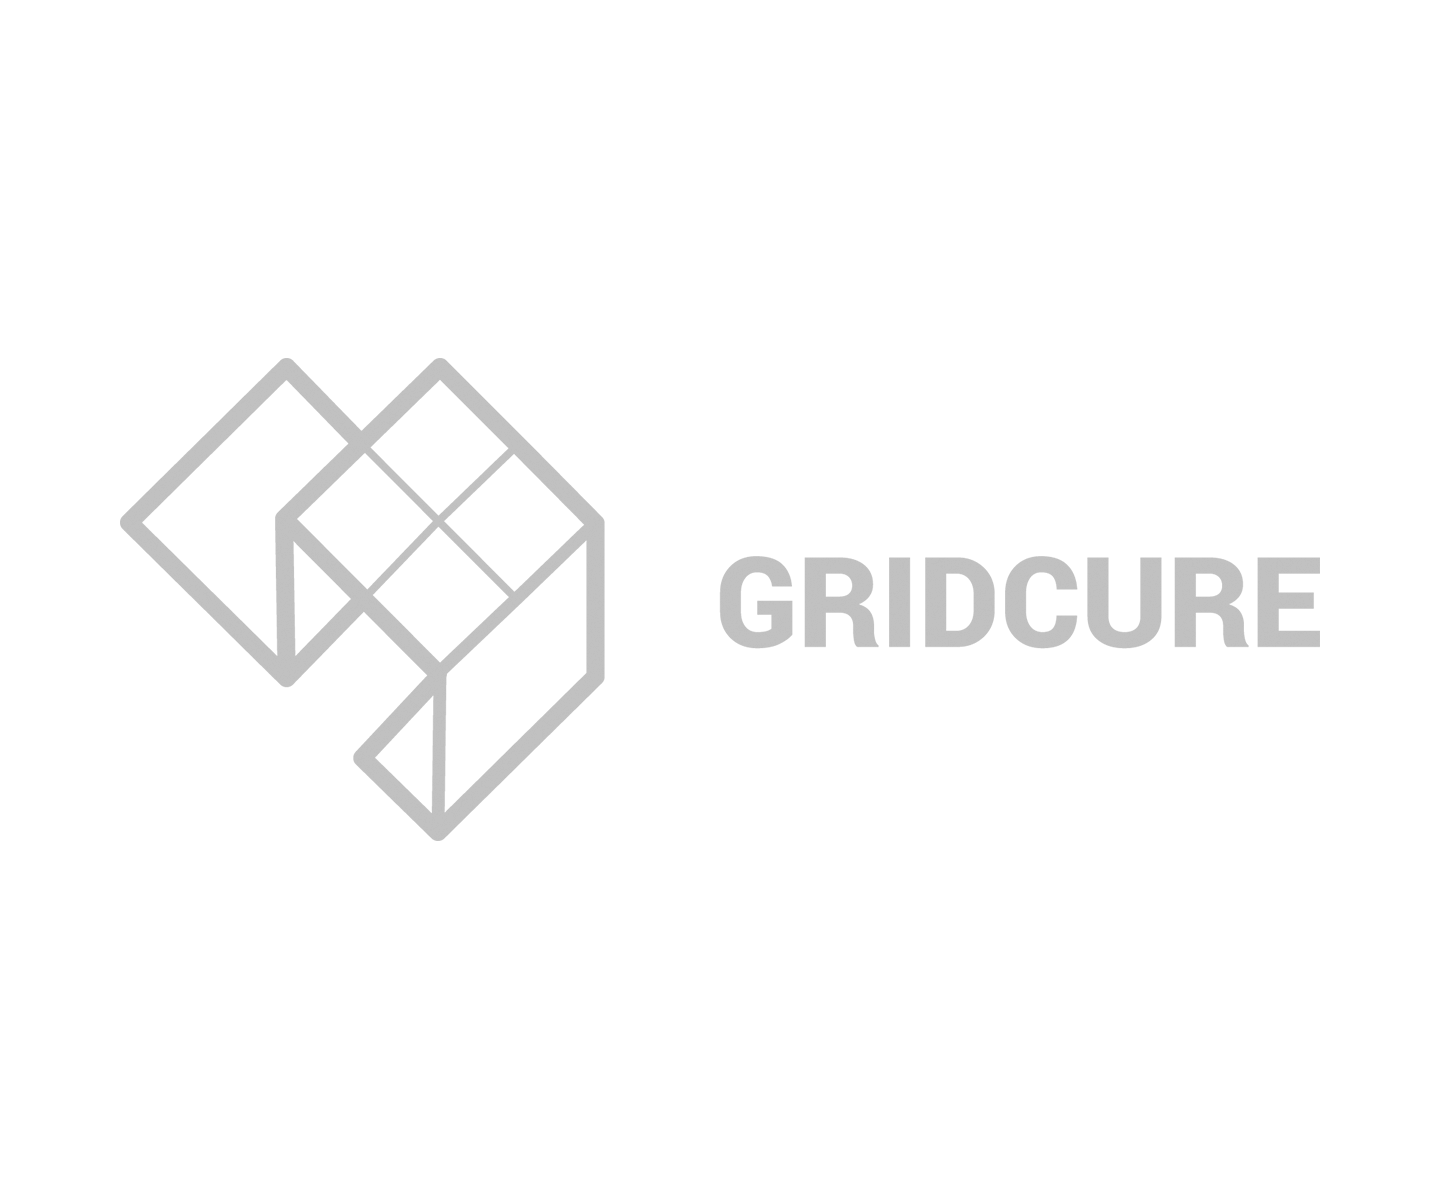 GridCure